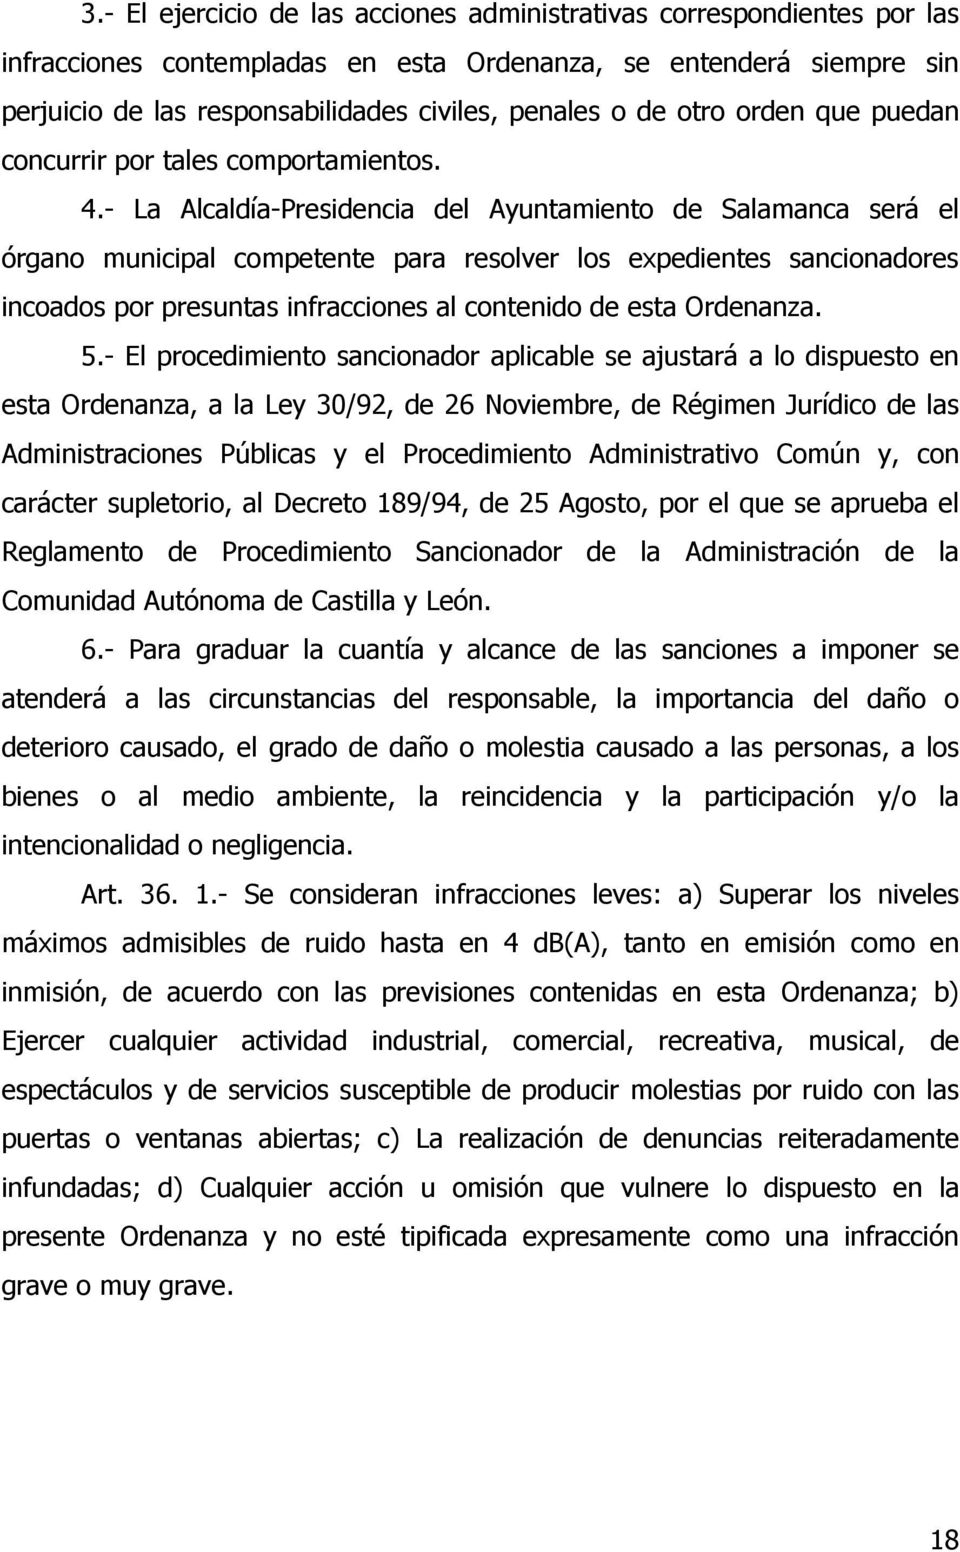 - La Alcaldía-Presidencia del Ayuntamiento de Salamanca será el órgano municipal competente para resolver los expedientes sancionadores incoados por presuntas infracciones al contenido de esta